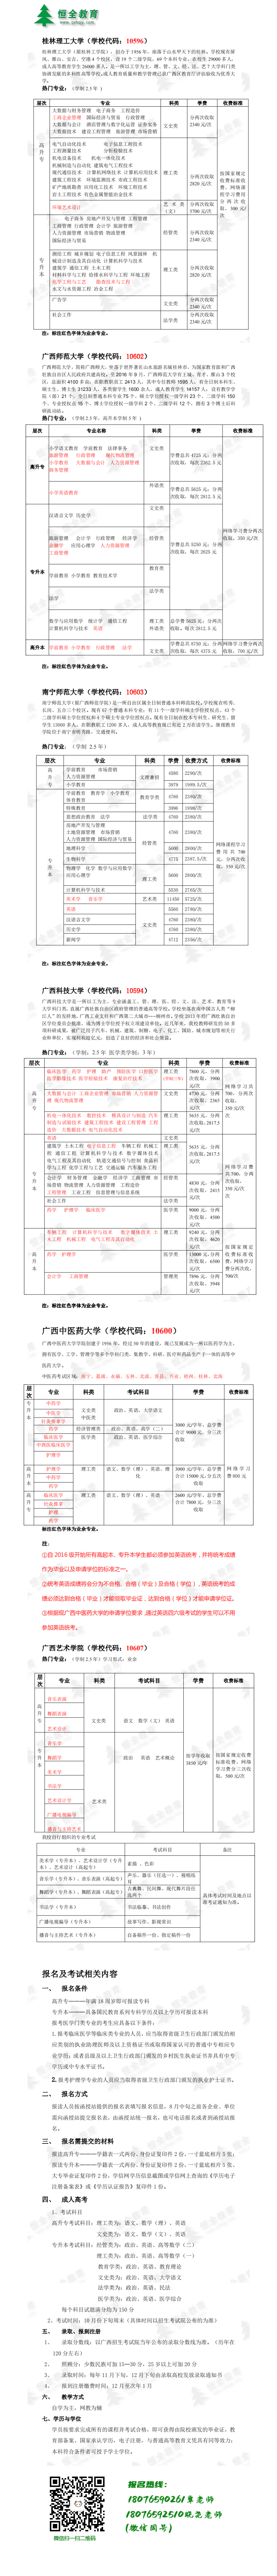 2021年学历招生简章(8.25)长图_0.png